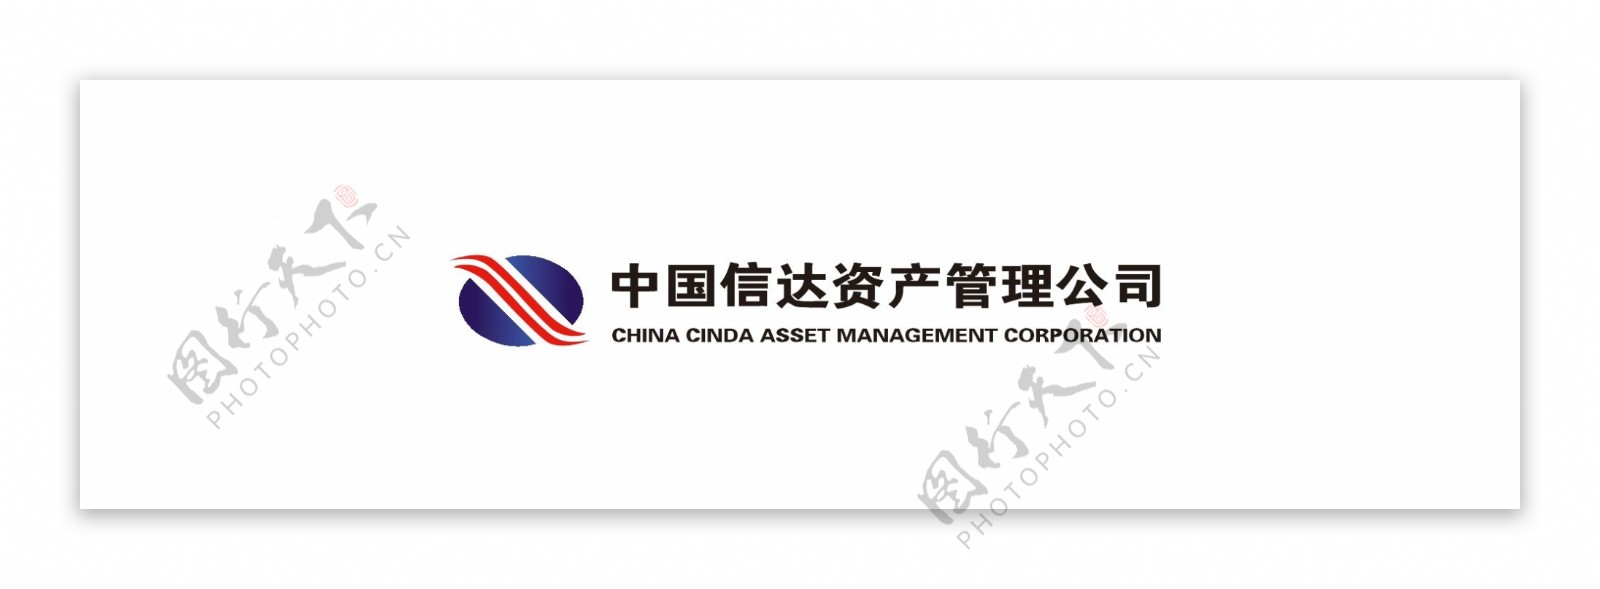 中国信达资产公司标题logo